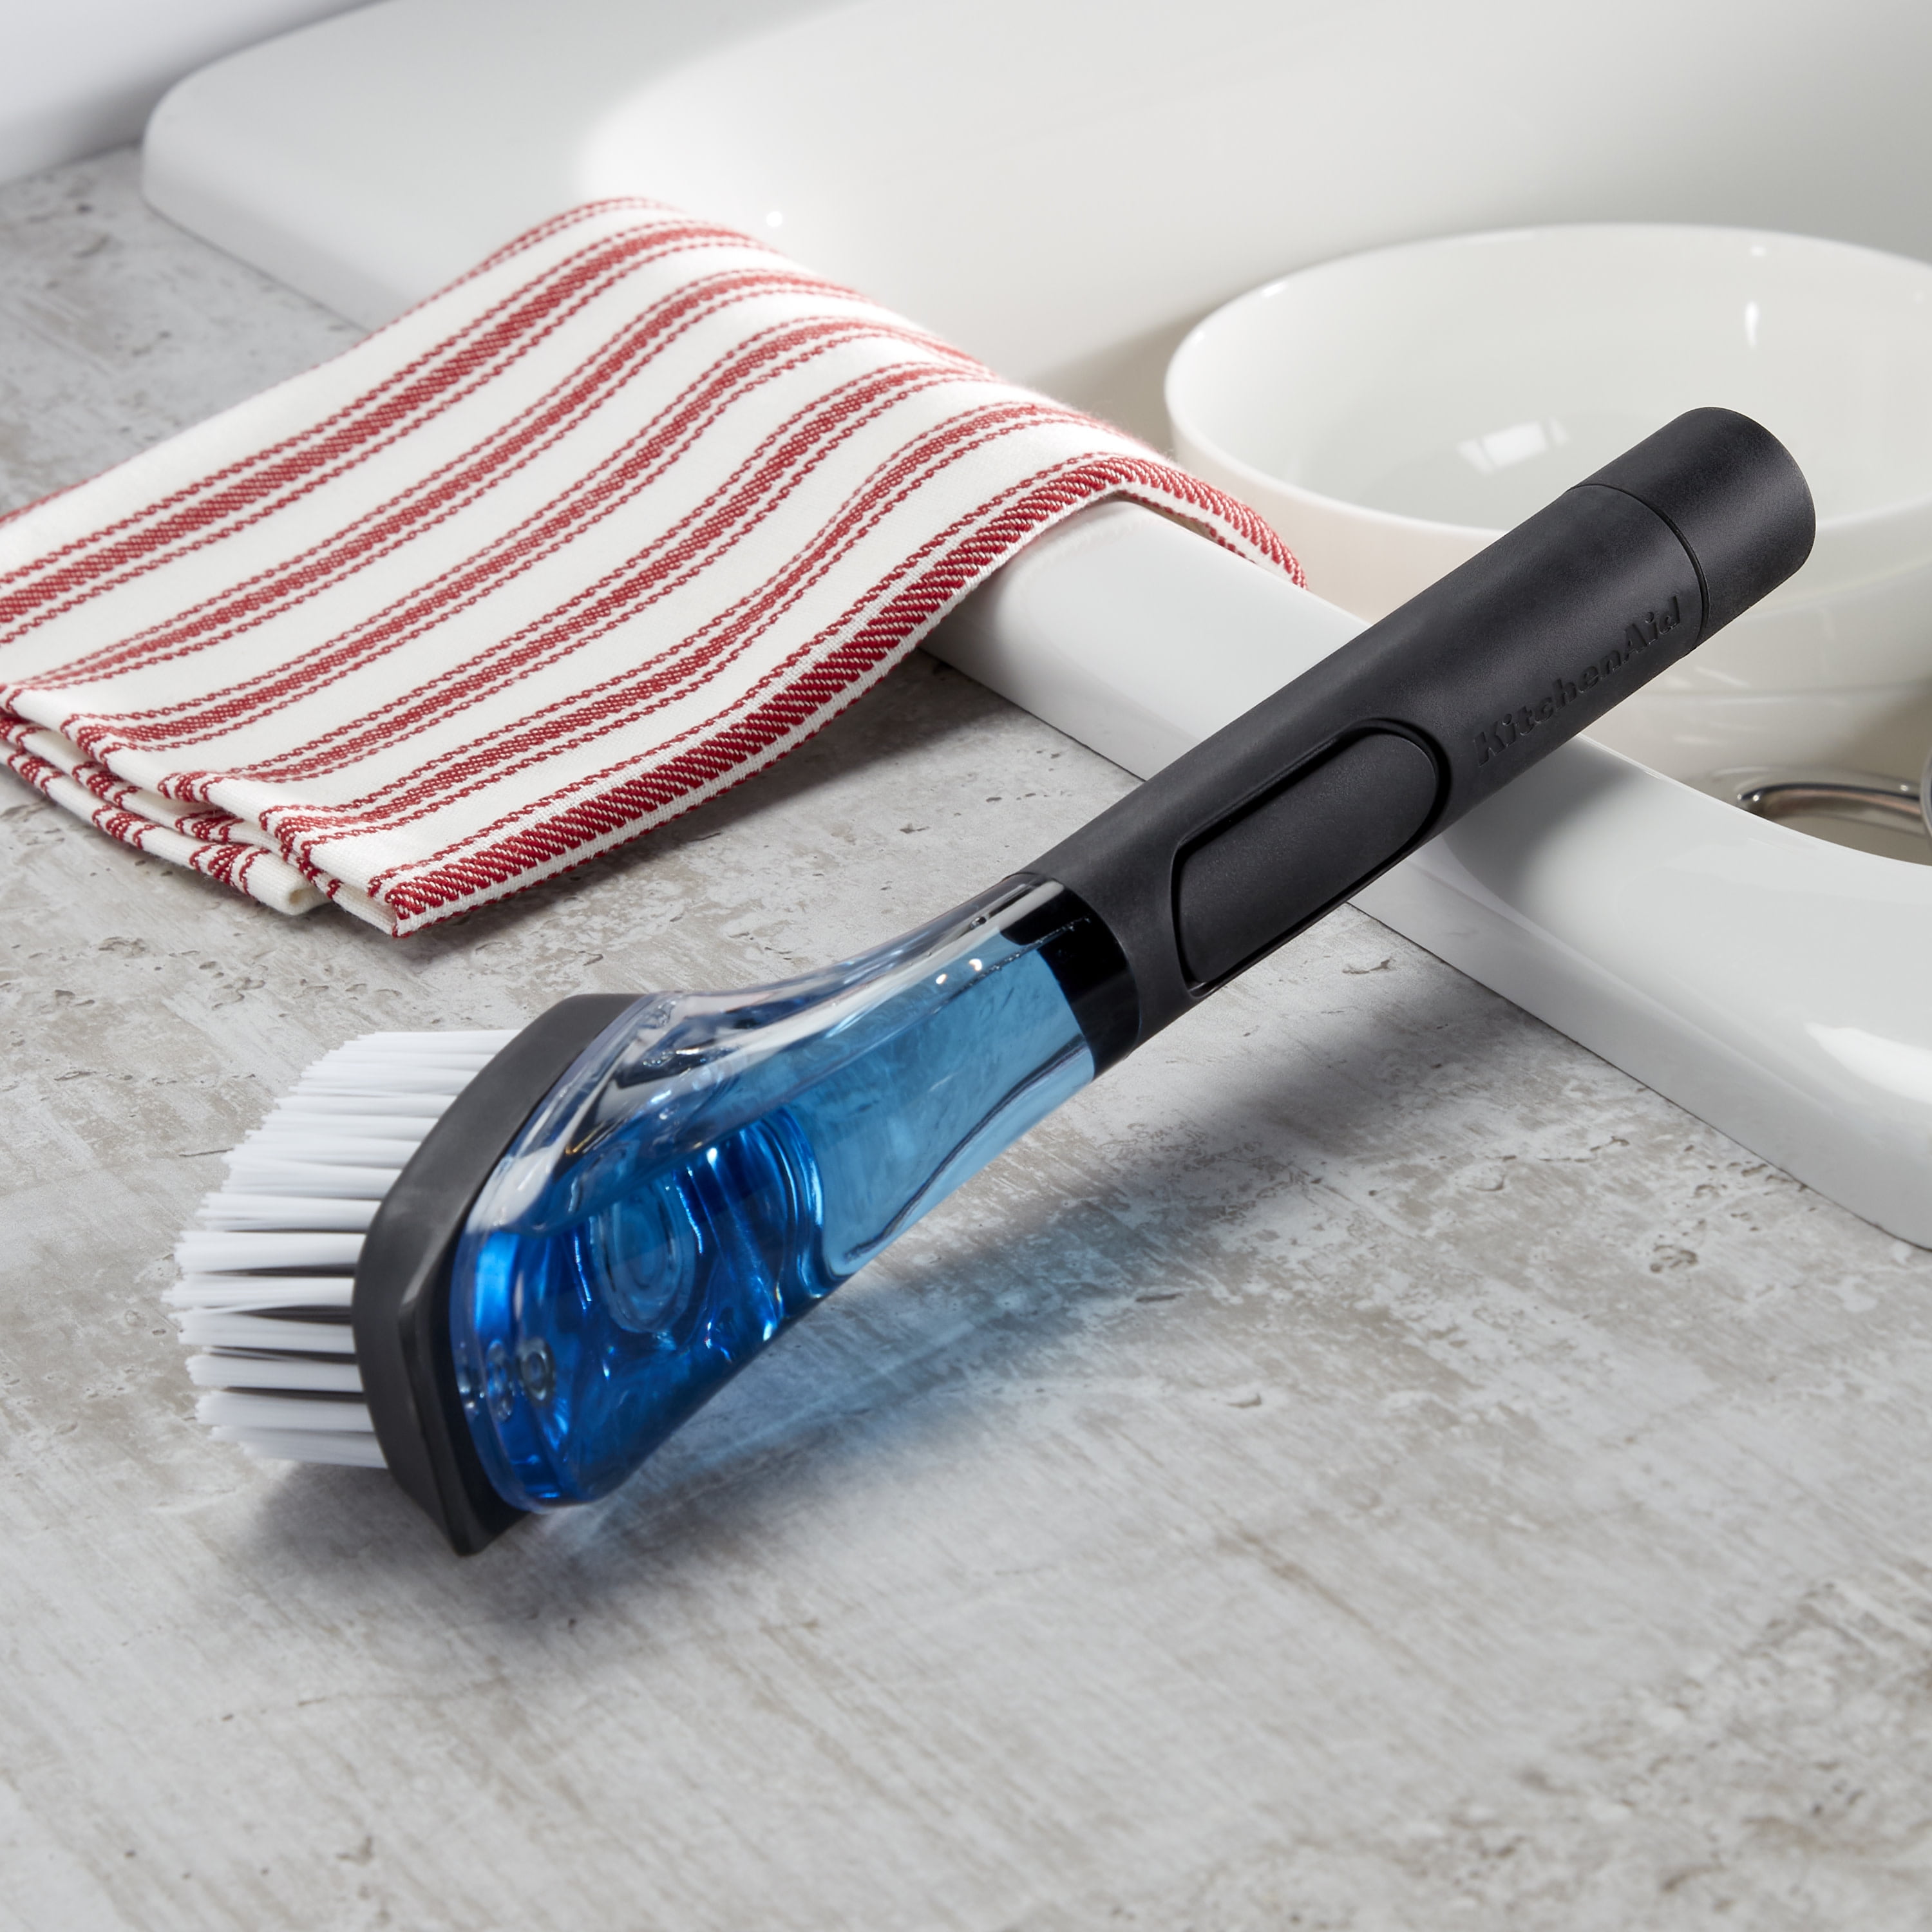 OXO Good Grips Soap Dispensing Kitchen Brush